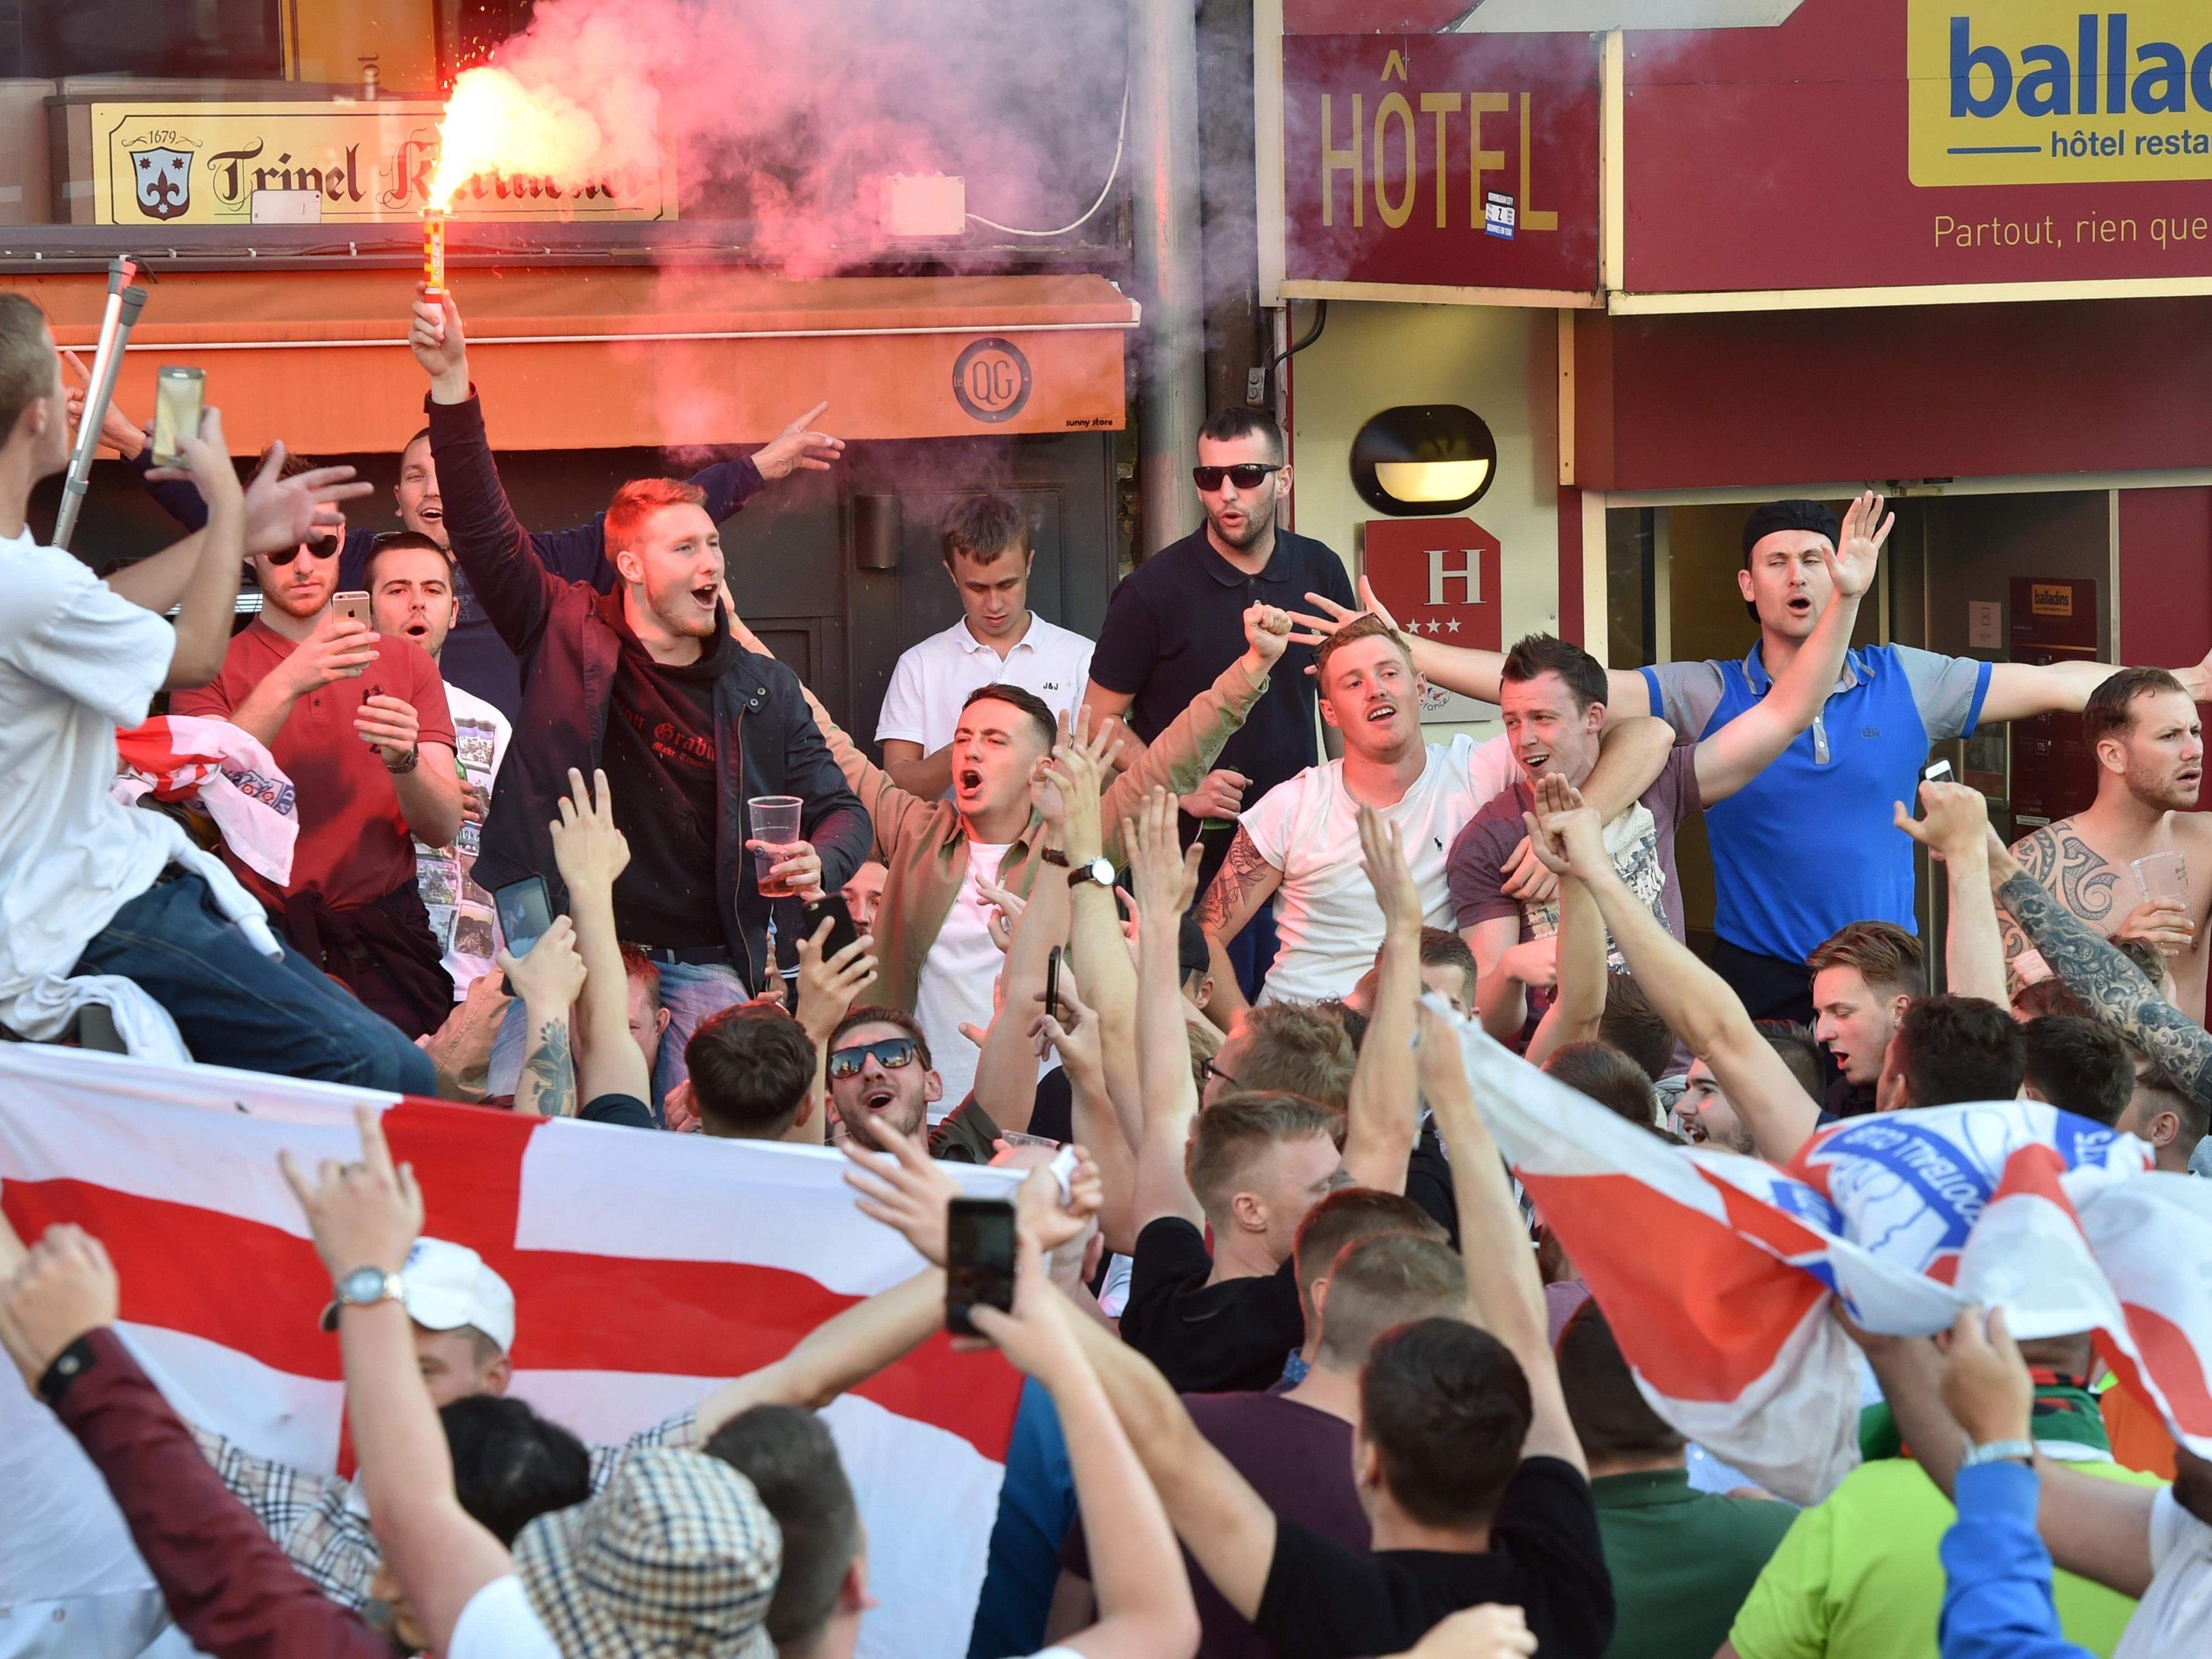 Englische Fans randalierten in Lille und lösten einen Polizeieinsatz aus.